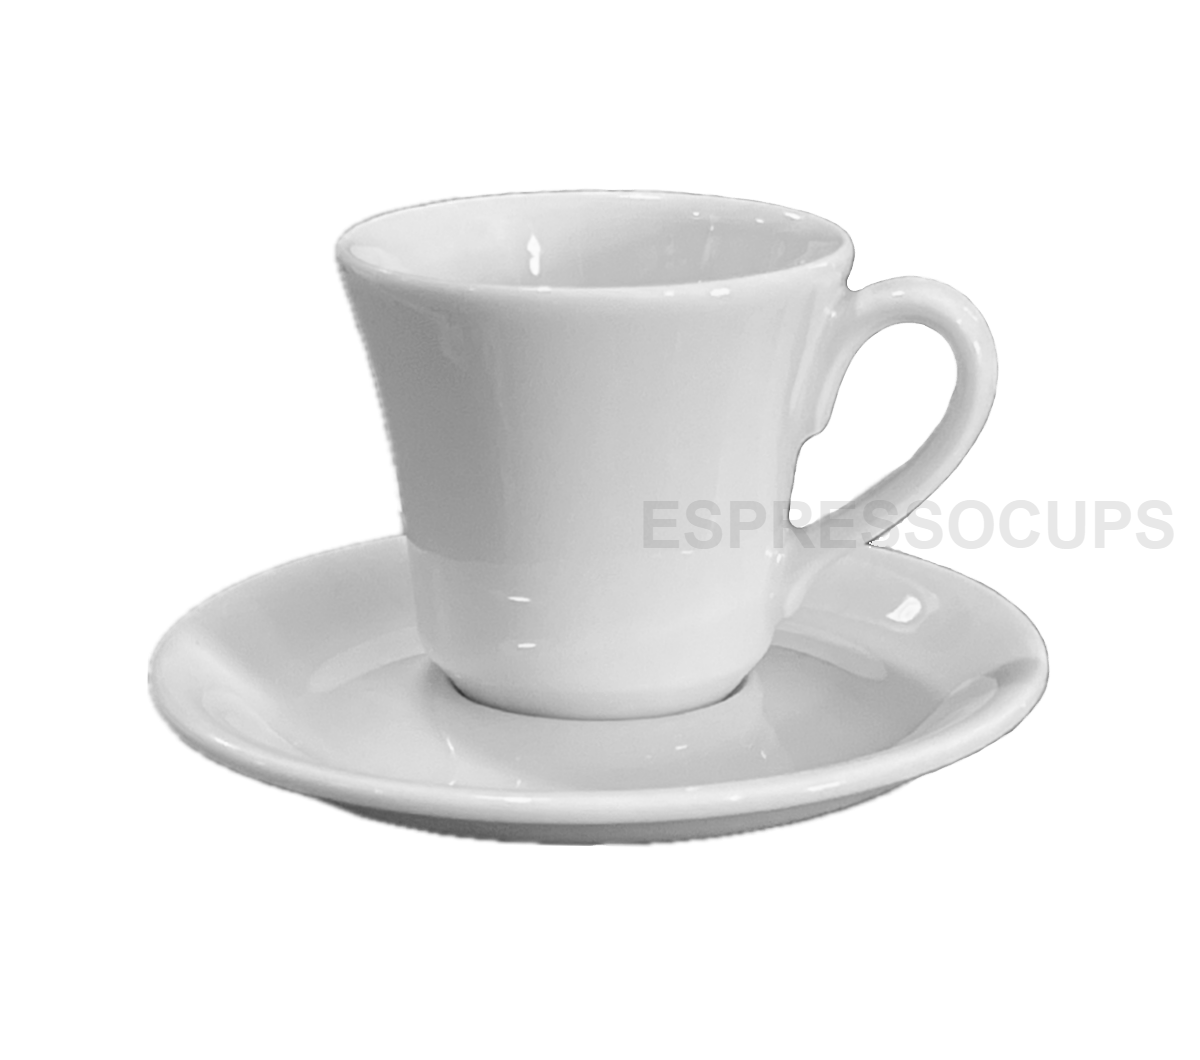 "TORCELLO" Espresso Cups 105ml